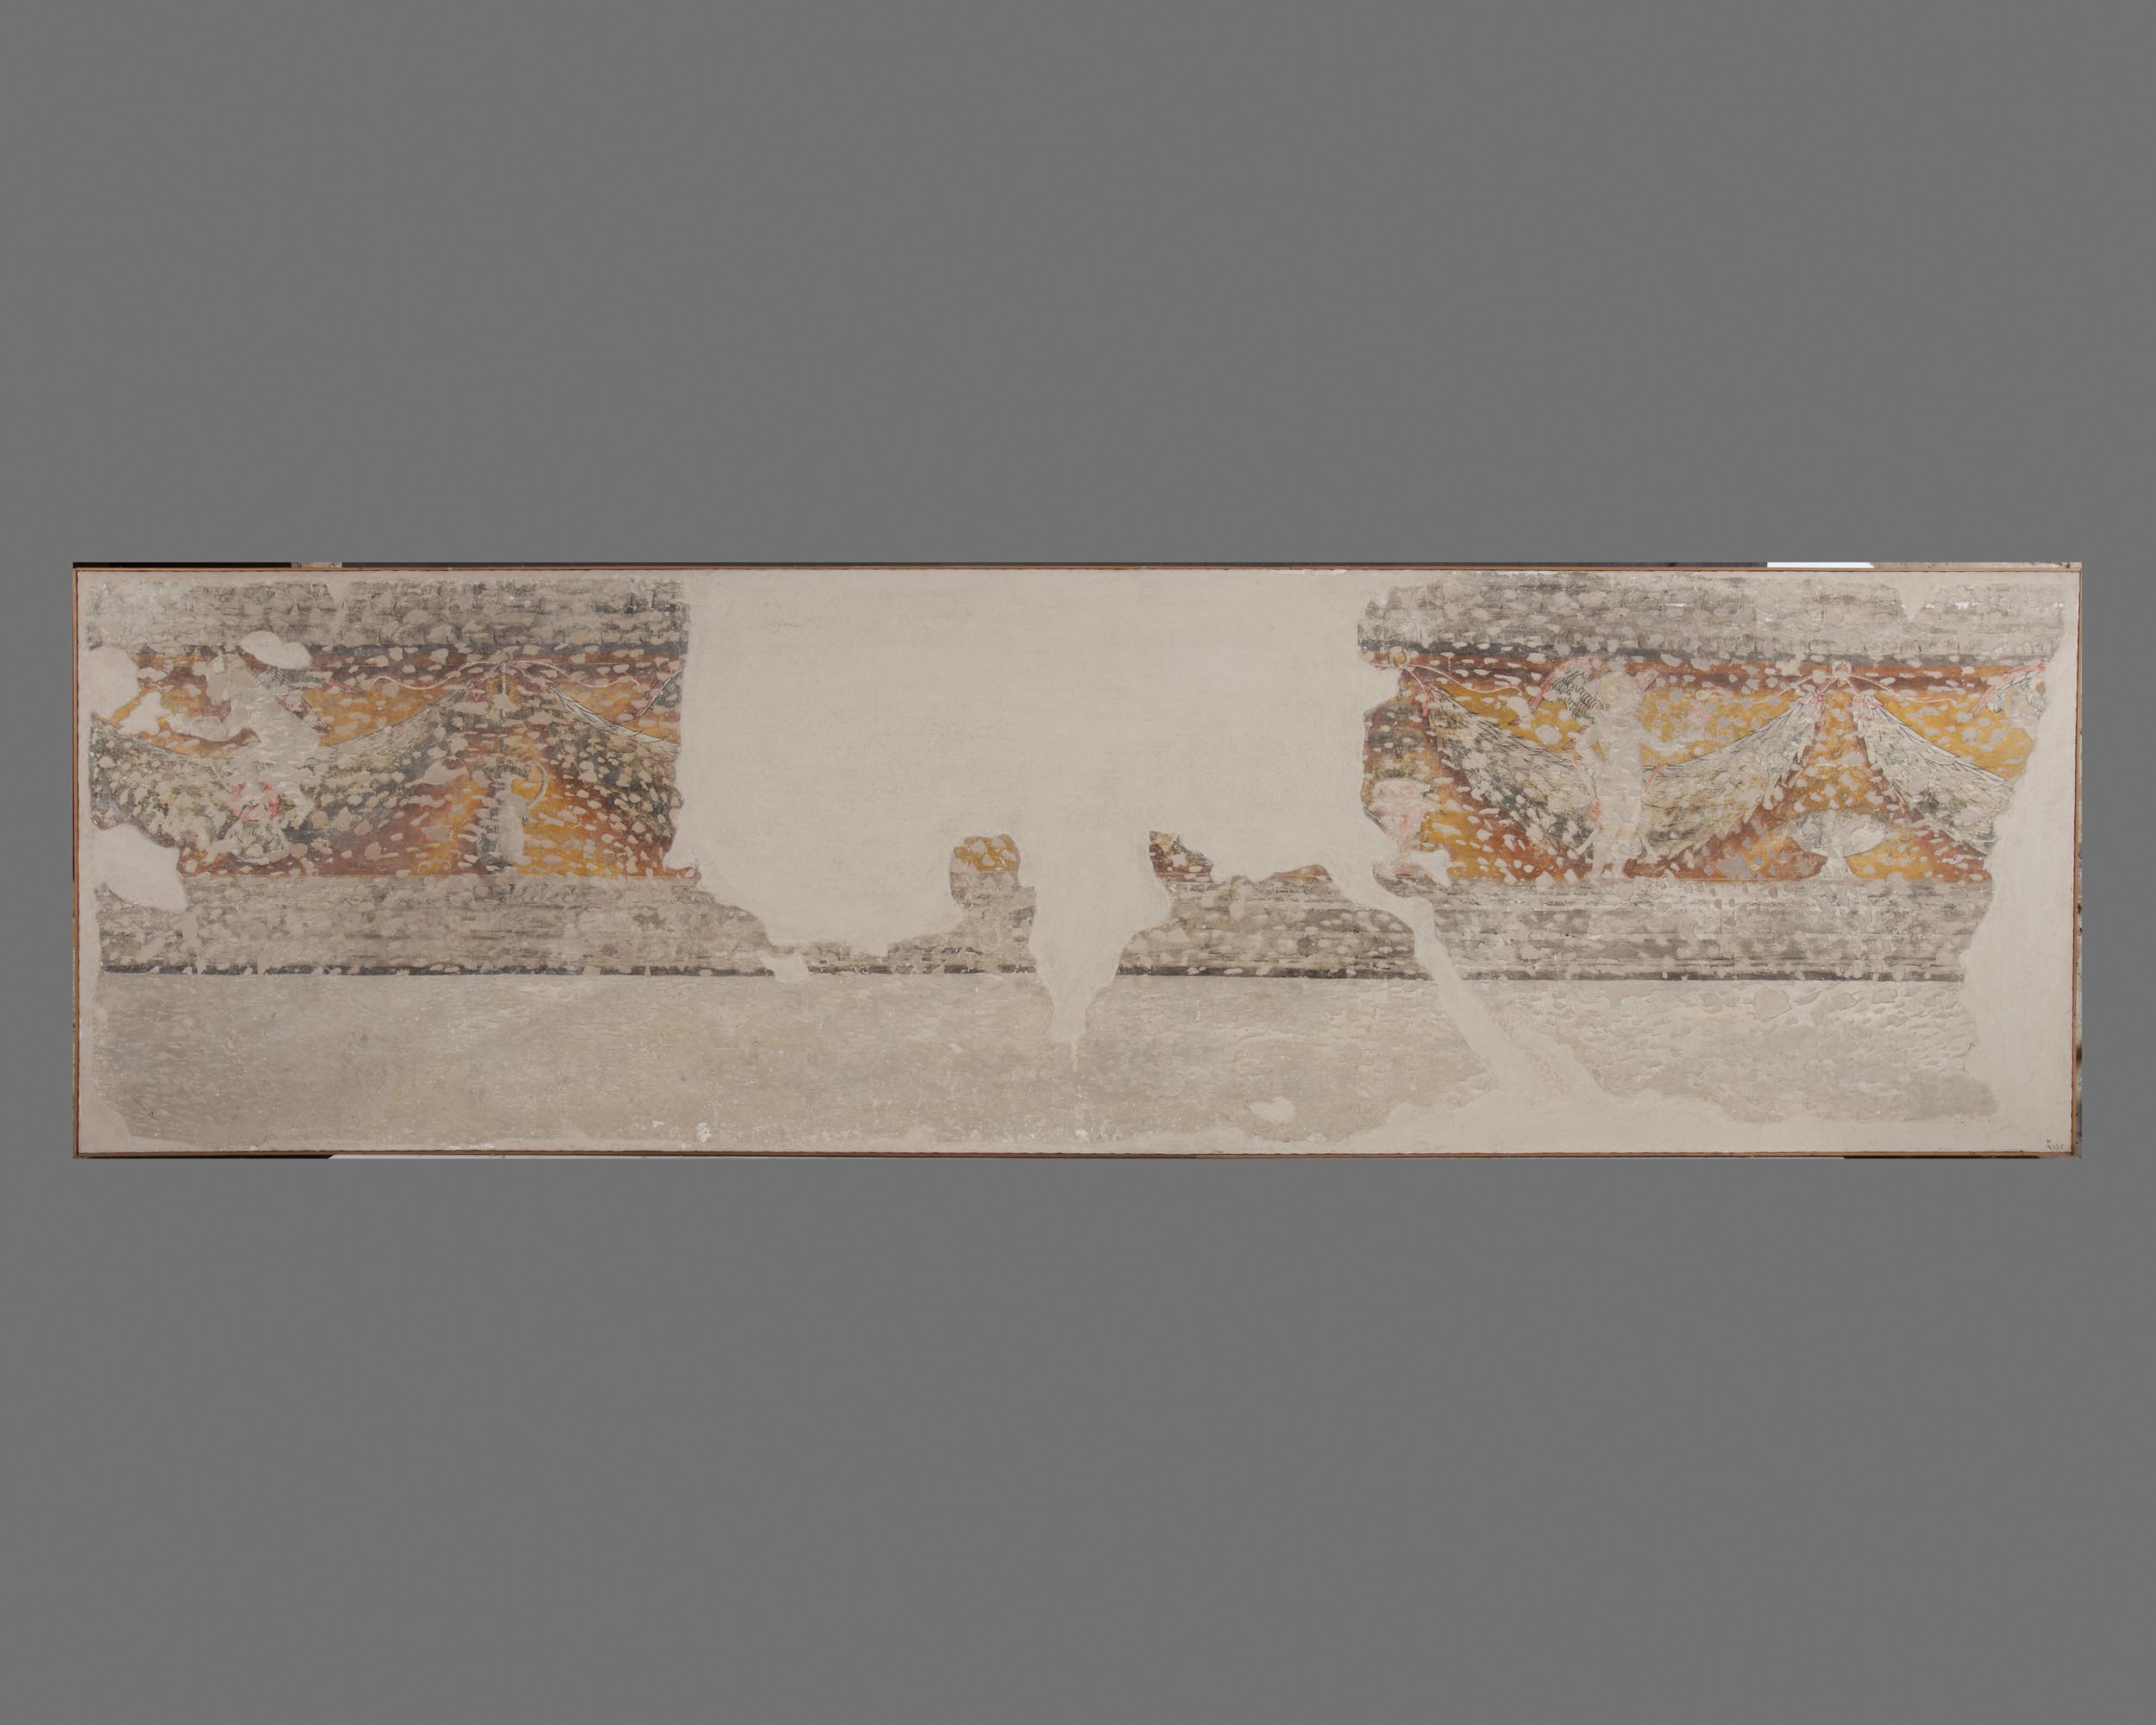 Fregio ornamentale con putti e festoni appesi ad anelli, con coppe e tazze, su fondo giallo (dipinto, frammento) - ambito mantovano (secc. XV/ XVI)